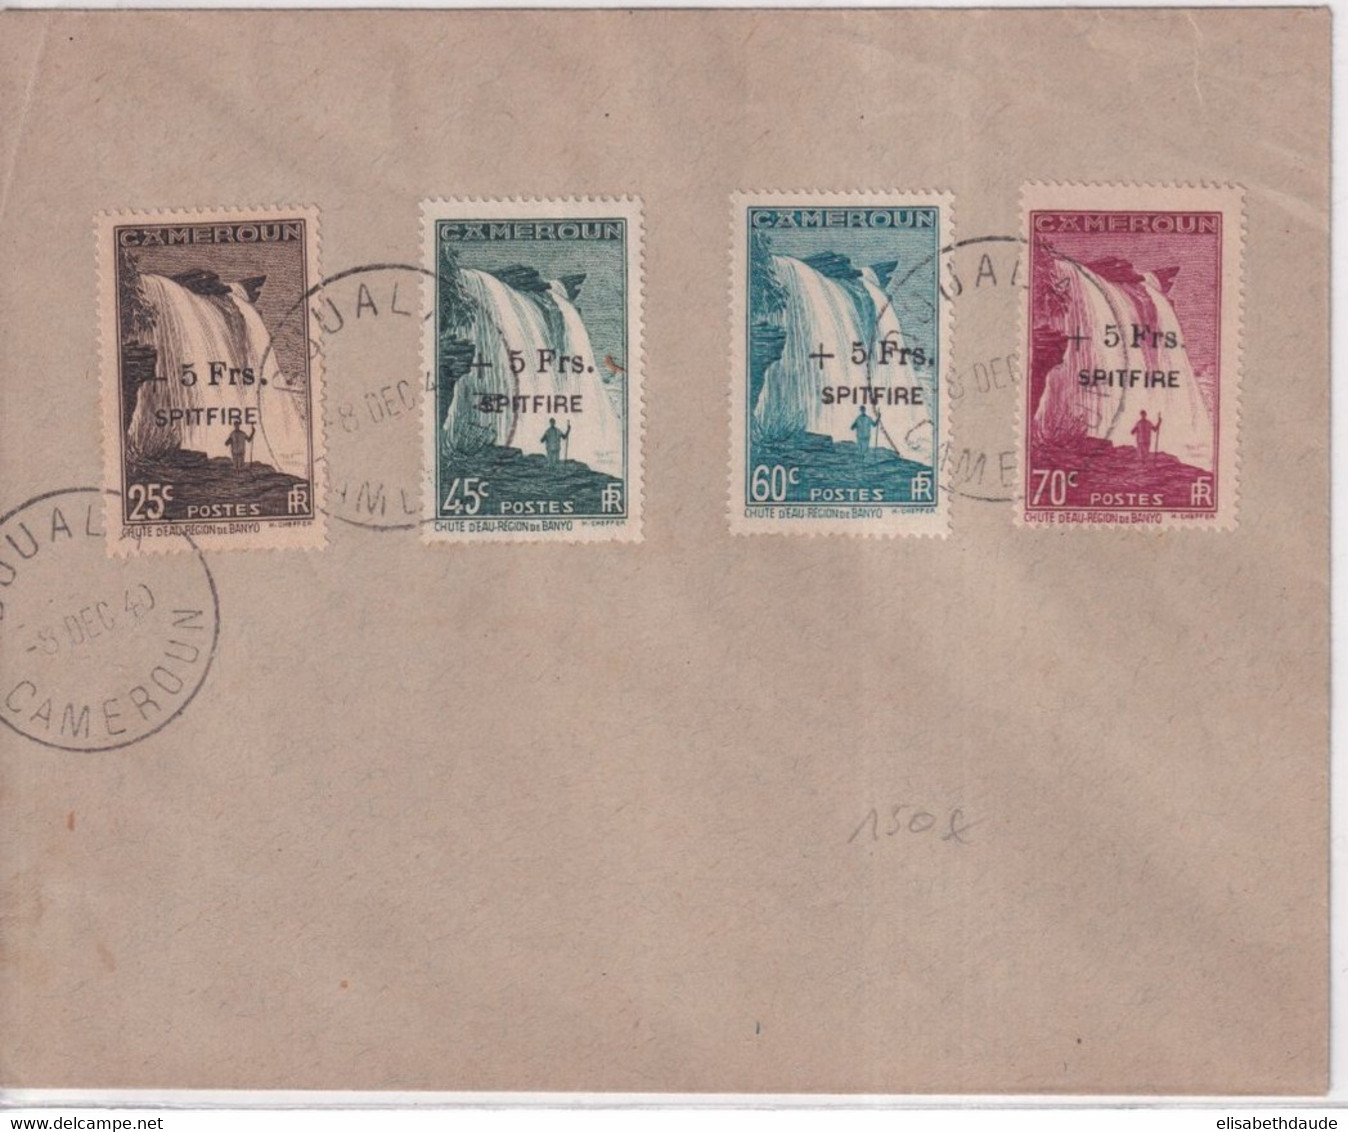 CAMEROUN - 1940 - SERIE FRANCE LIBRE "SPITFIRE" YVERT 236/239 OBLITEREE Sur ENVELOPPE - COTE = 580 EUR. - Lettres & Documents